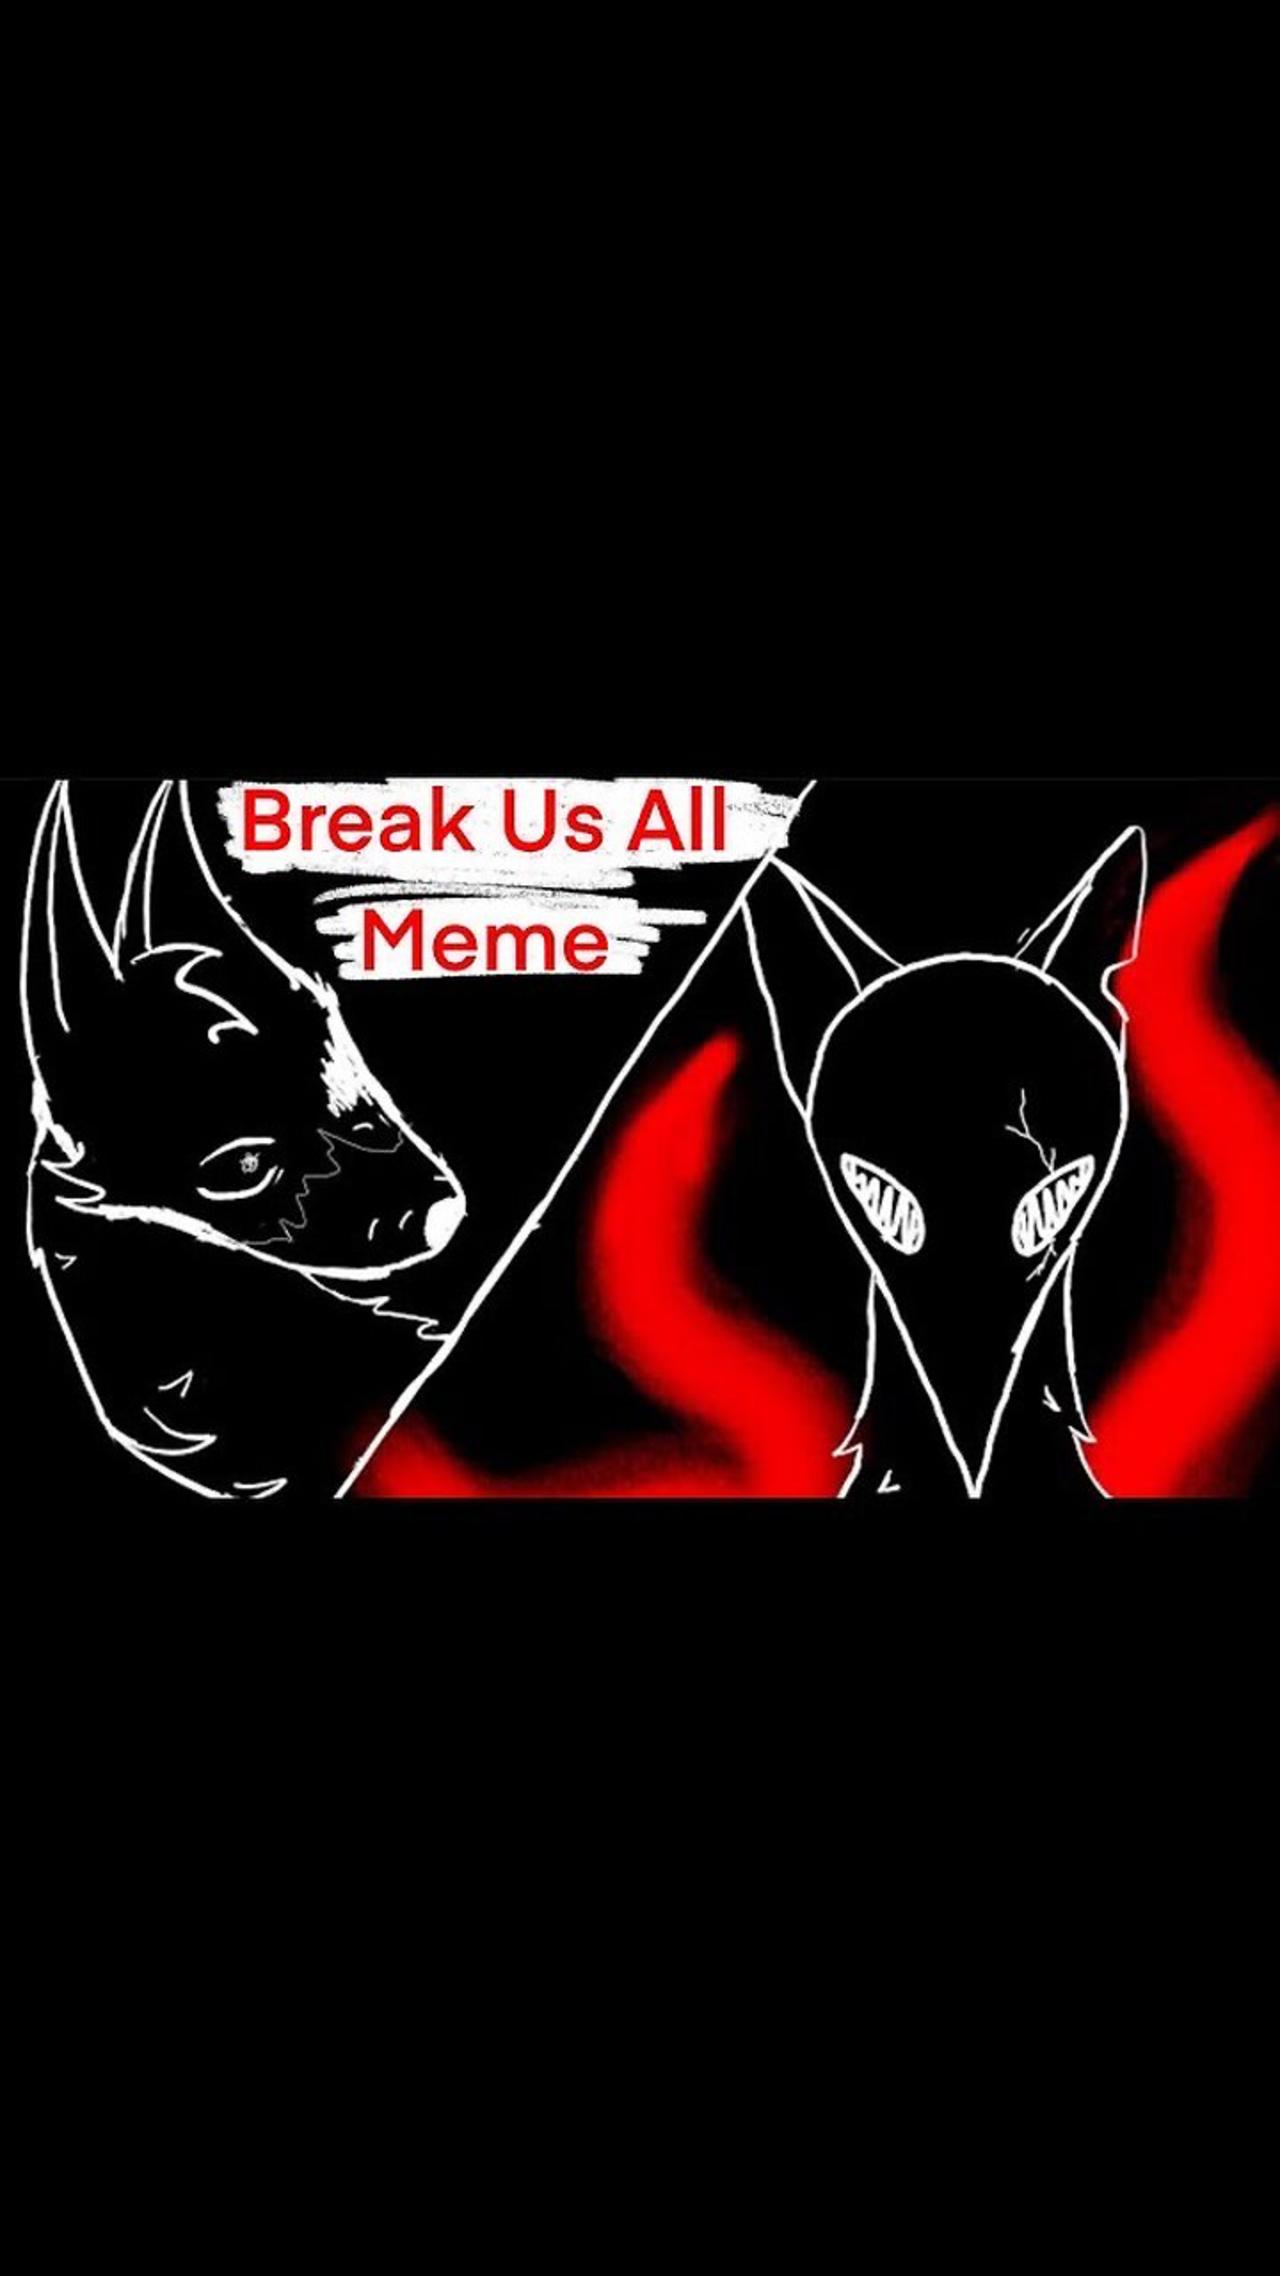 Break us all meme // animation // meme